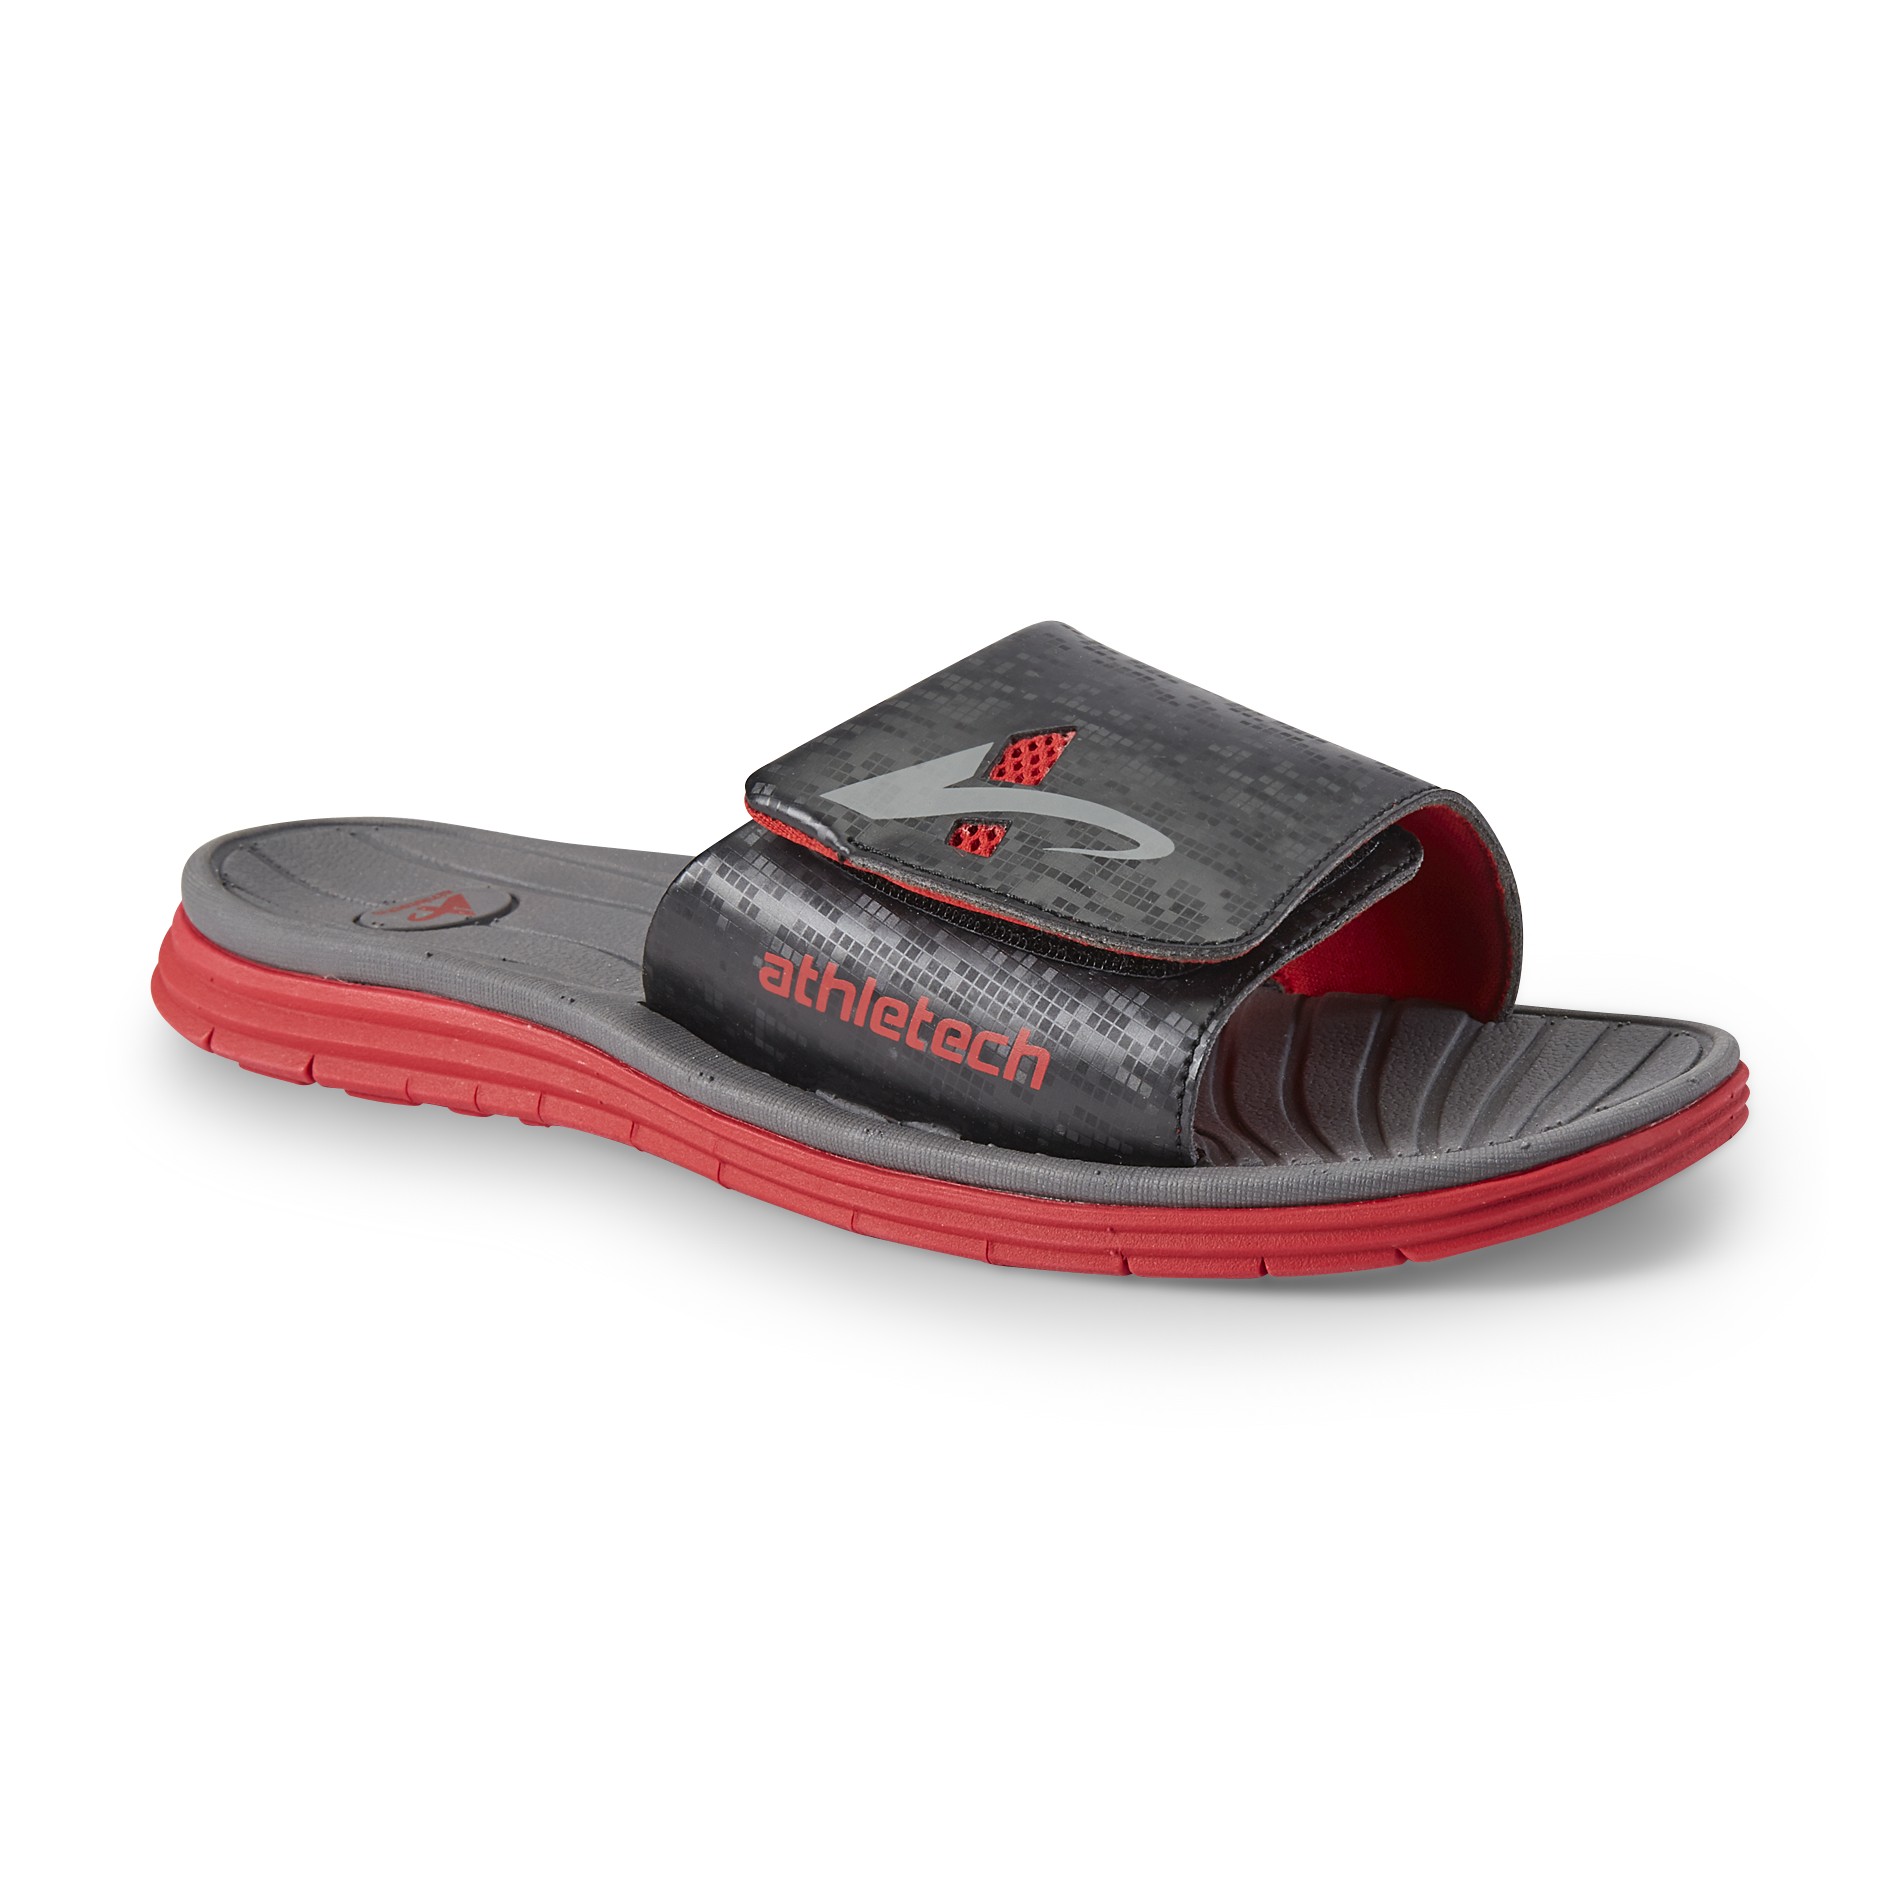 Athletech Men's MegaFlex 2 Red/Black/Gray Slide Sandal